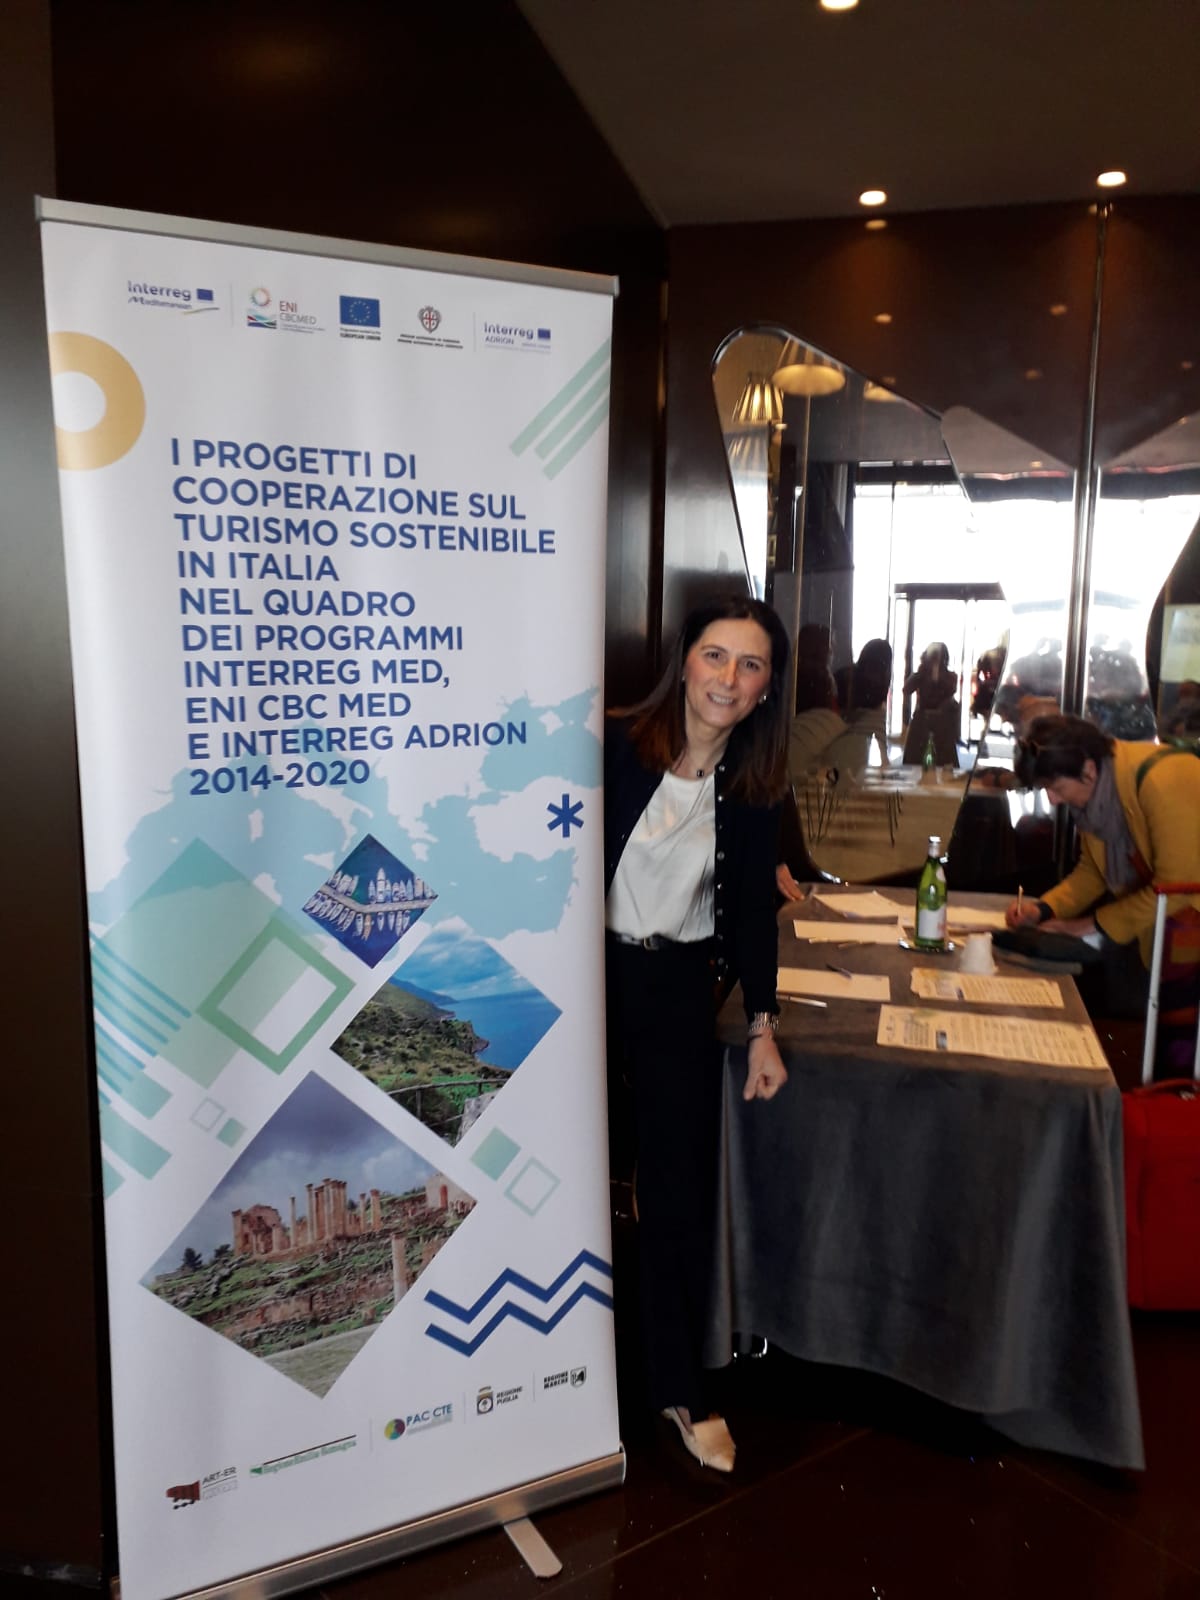 Gallery Bari, 30 marzo 2023 – Evento “Presentazione del Rapporto di Valutazione dei progetti di cooperazione sul Turismo Sostenibile, nel quadro dei Programmi Interreg Euro-MED, ENI CBC Med ed Interreg ADRION 2014-2020” - Slide 1 of 14